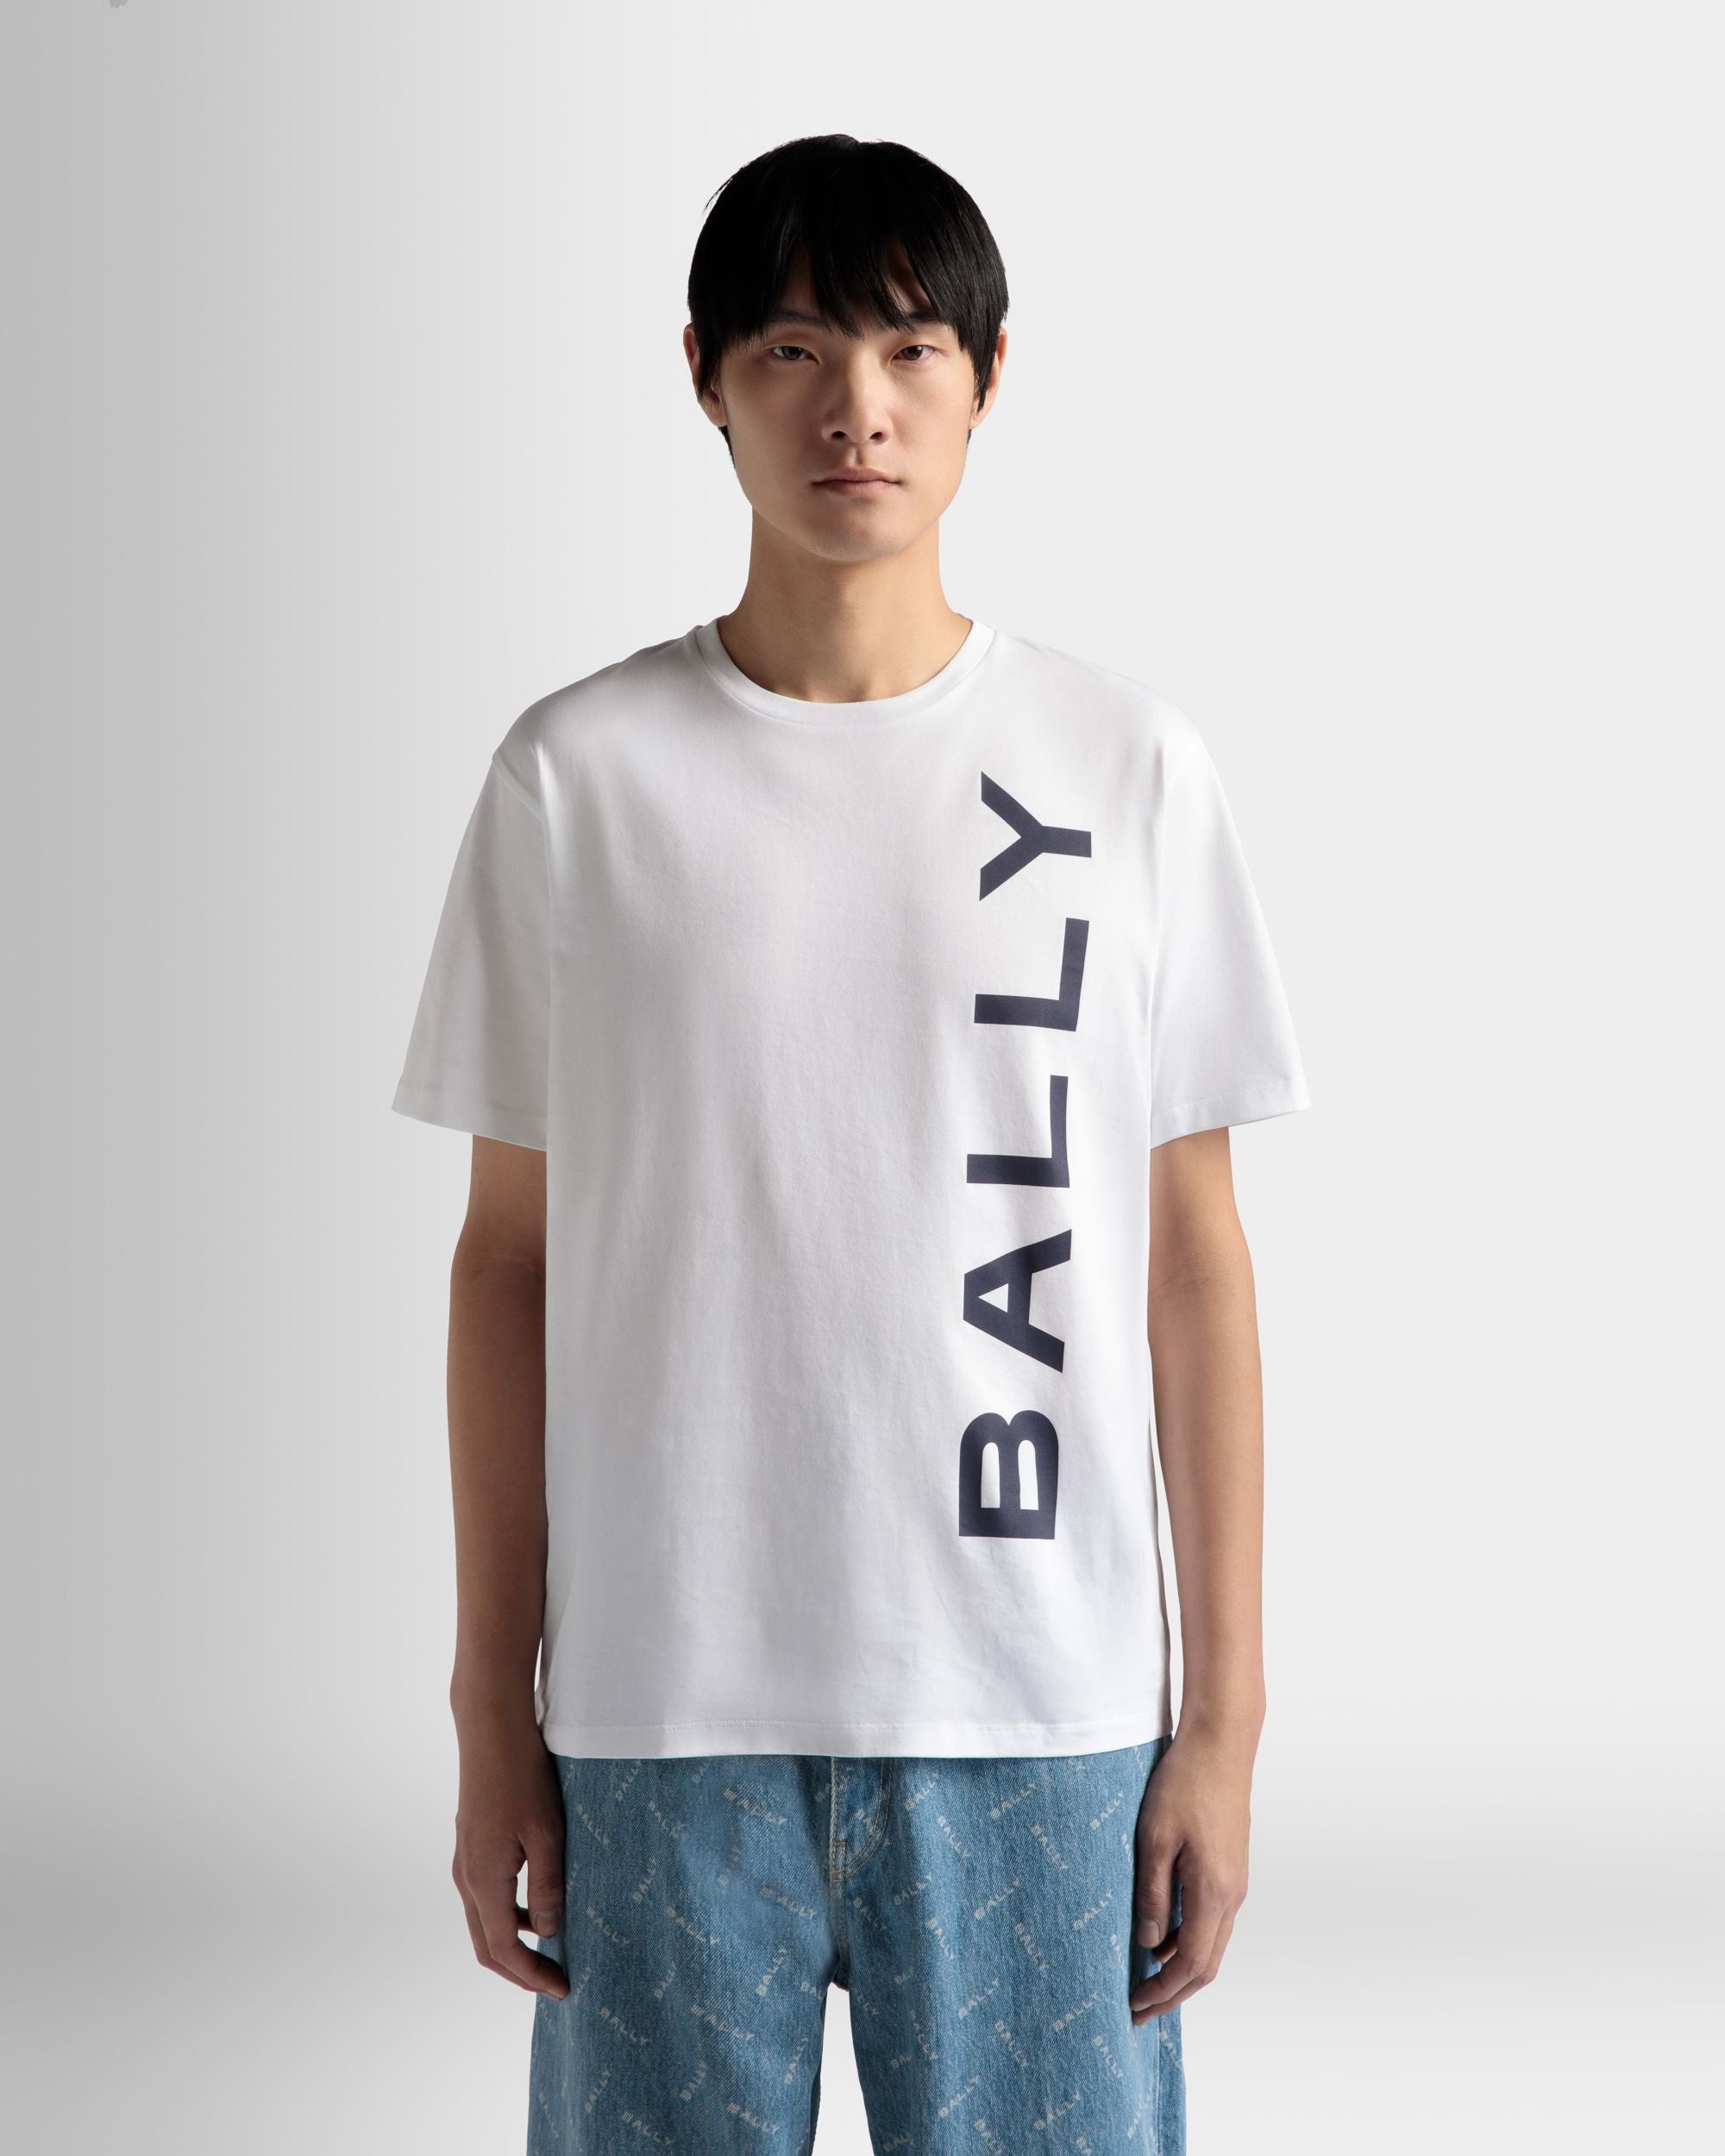 Herren-T-Shirt aus weißer Baumwolle | Bally | Model getragen Nahaufnahme